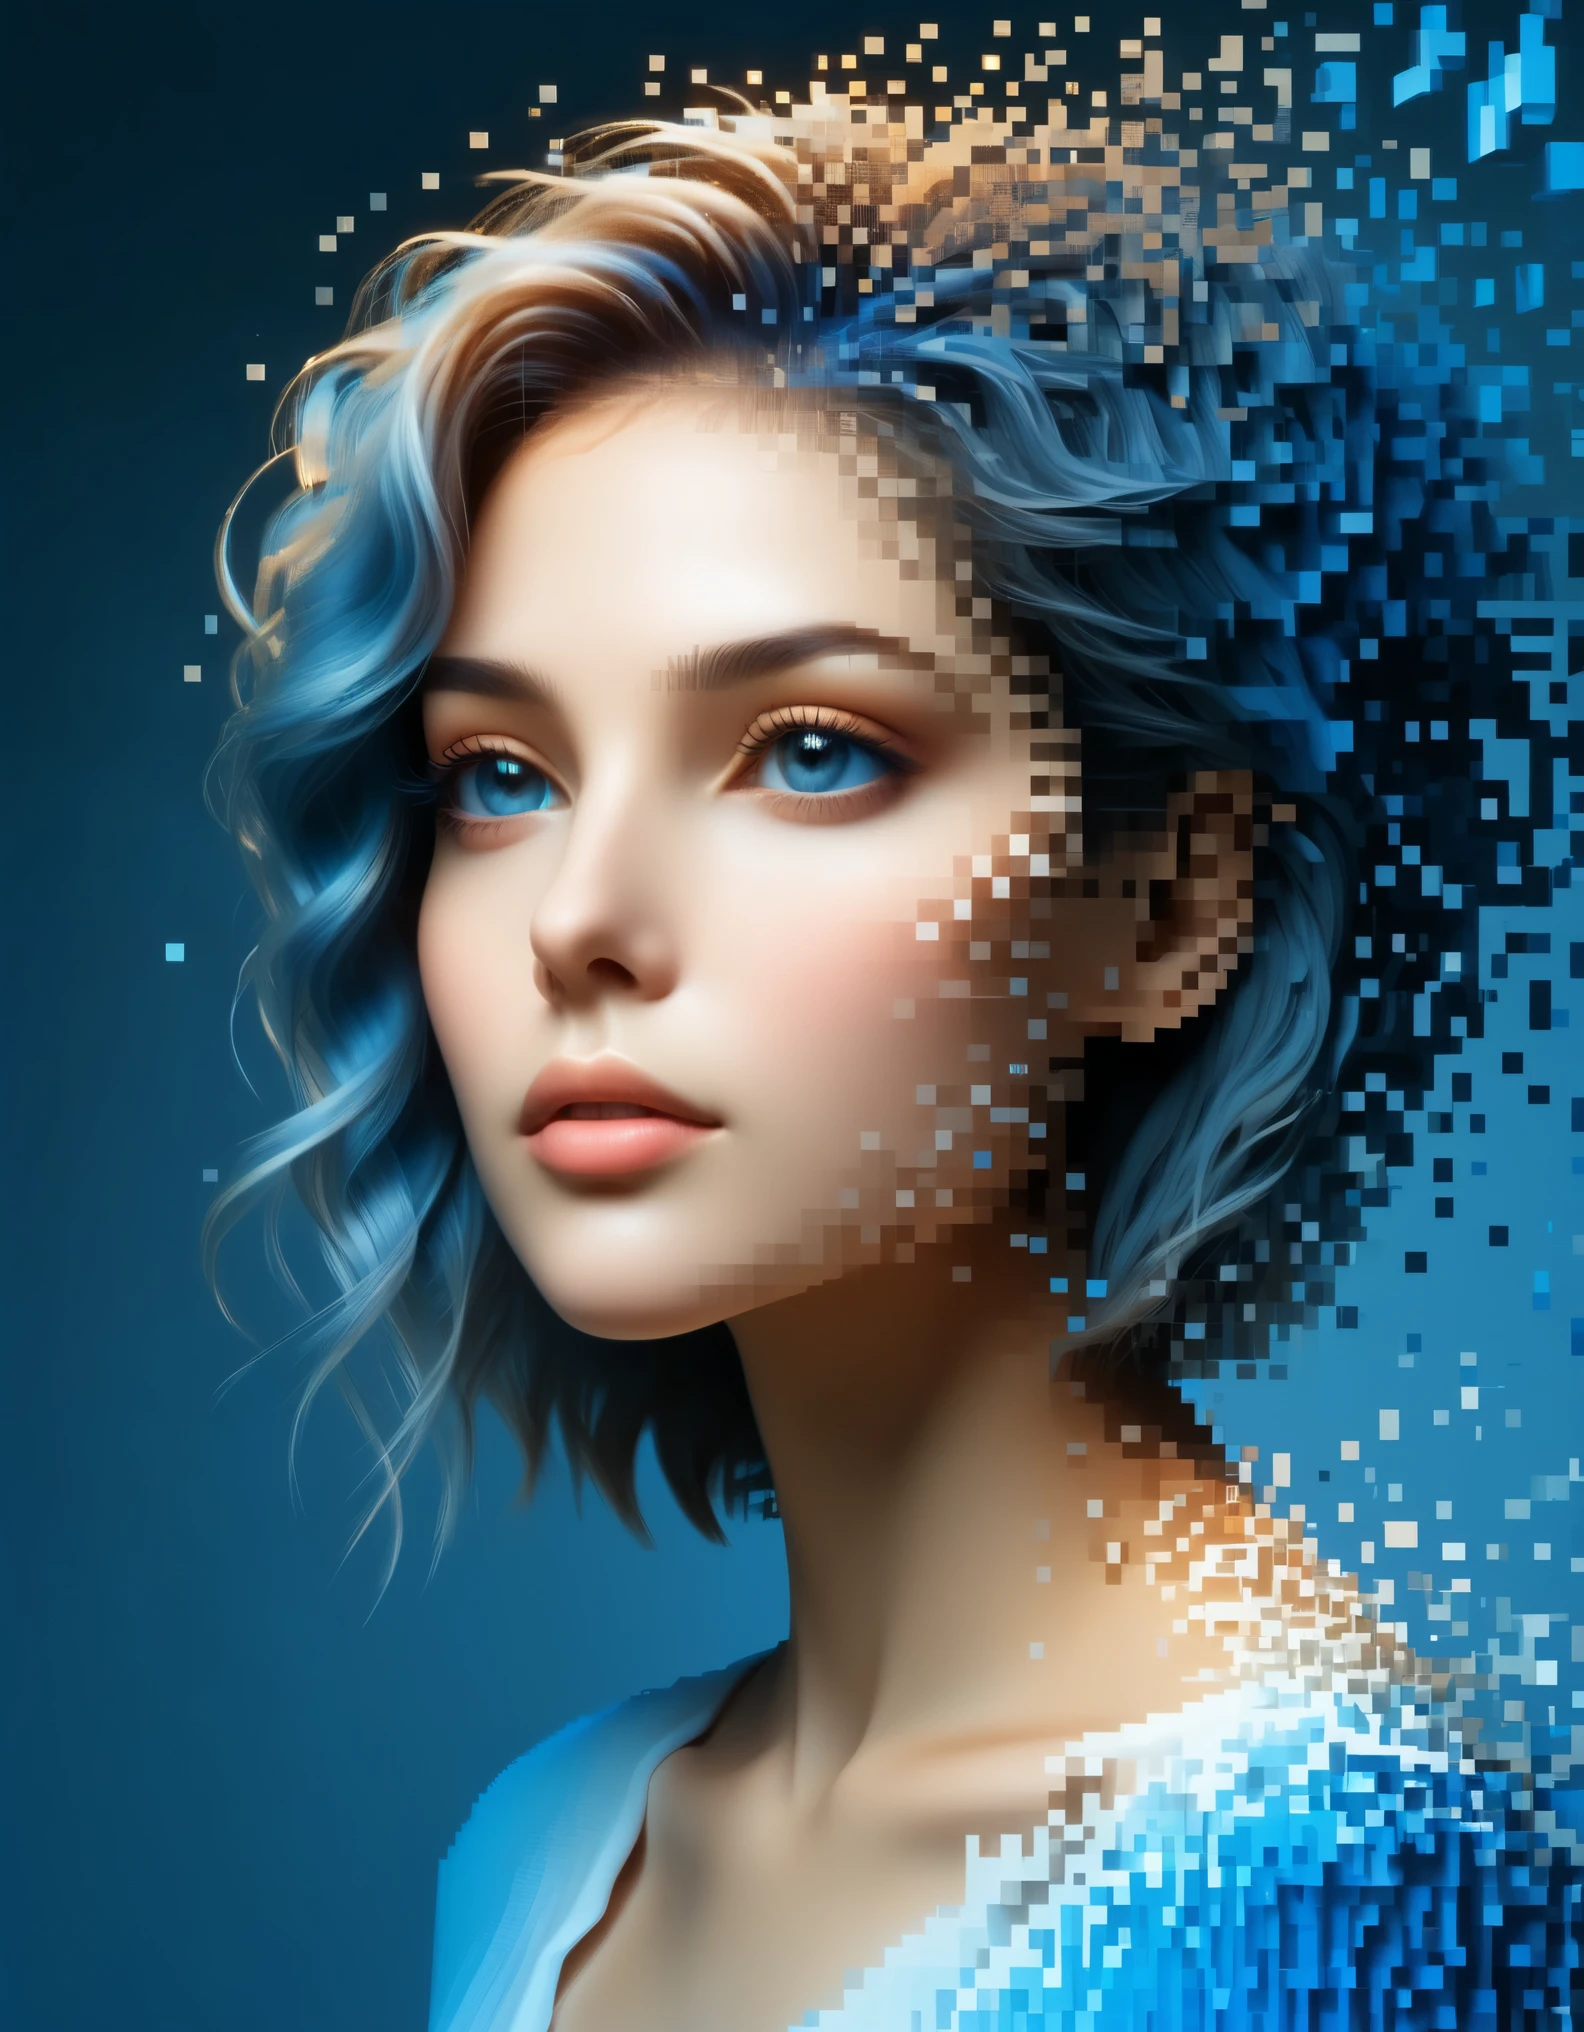 美しい女性の青いグラデーションカラーの溶解ピクセル壁&#39;頭，3Dボクセルブロック，最初は無傷だが、空気中で徐々に崩壊していく構造，部分的にくり抜かれた部分から日光が差し込む，背景宇宙